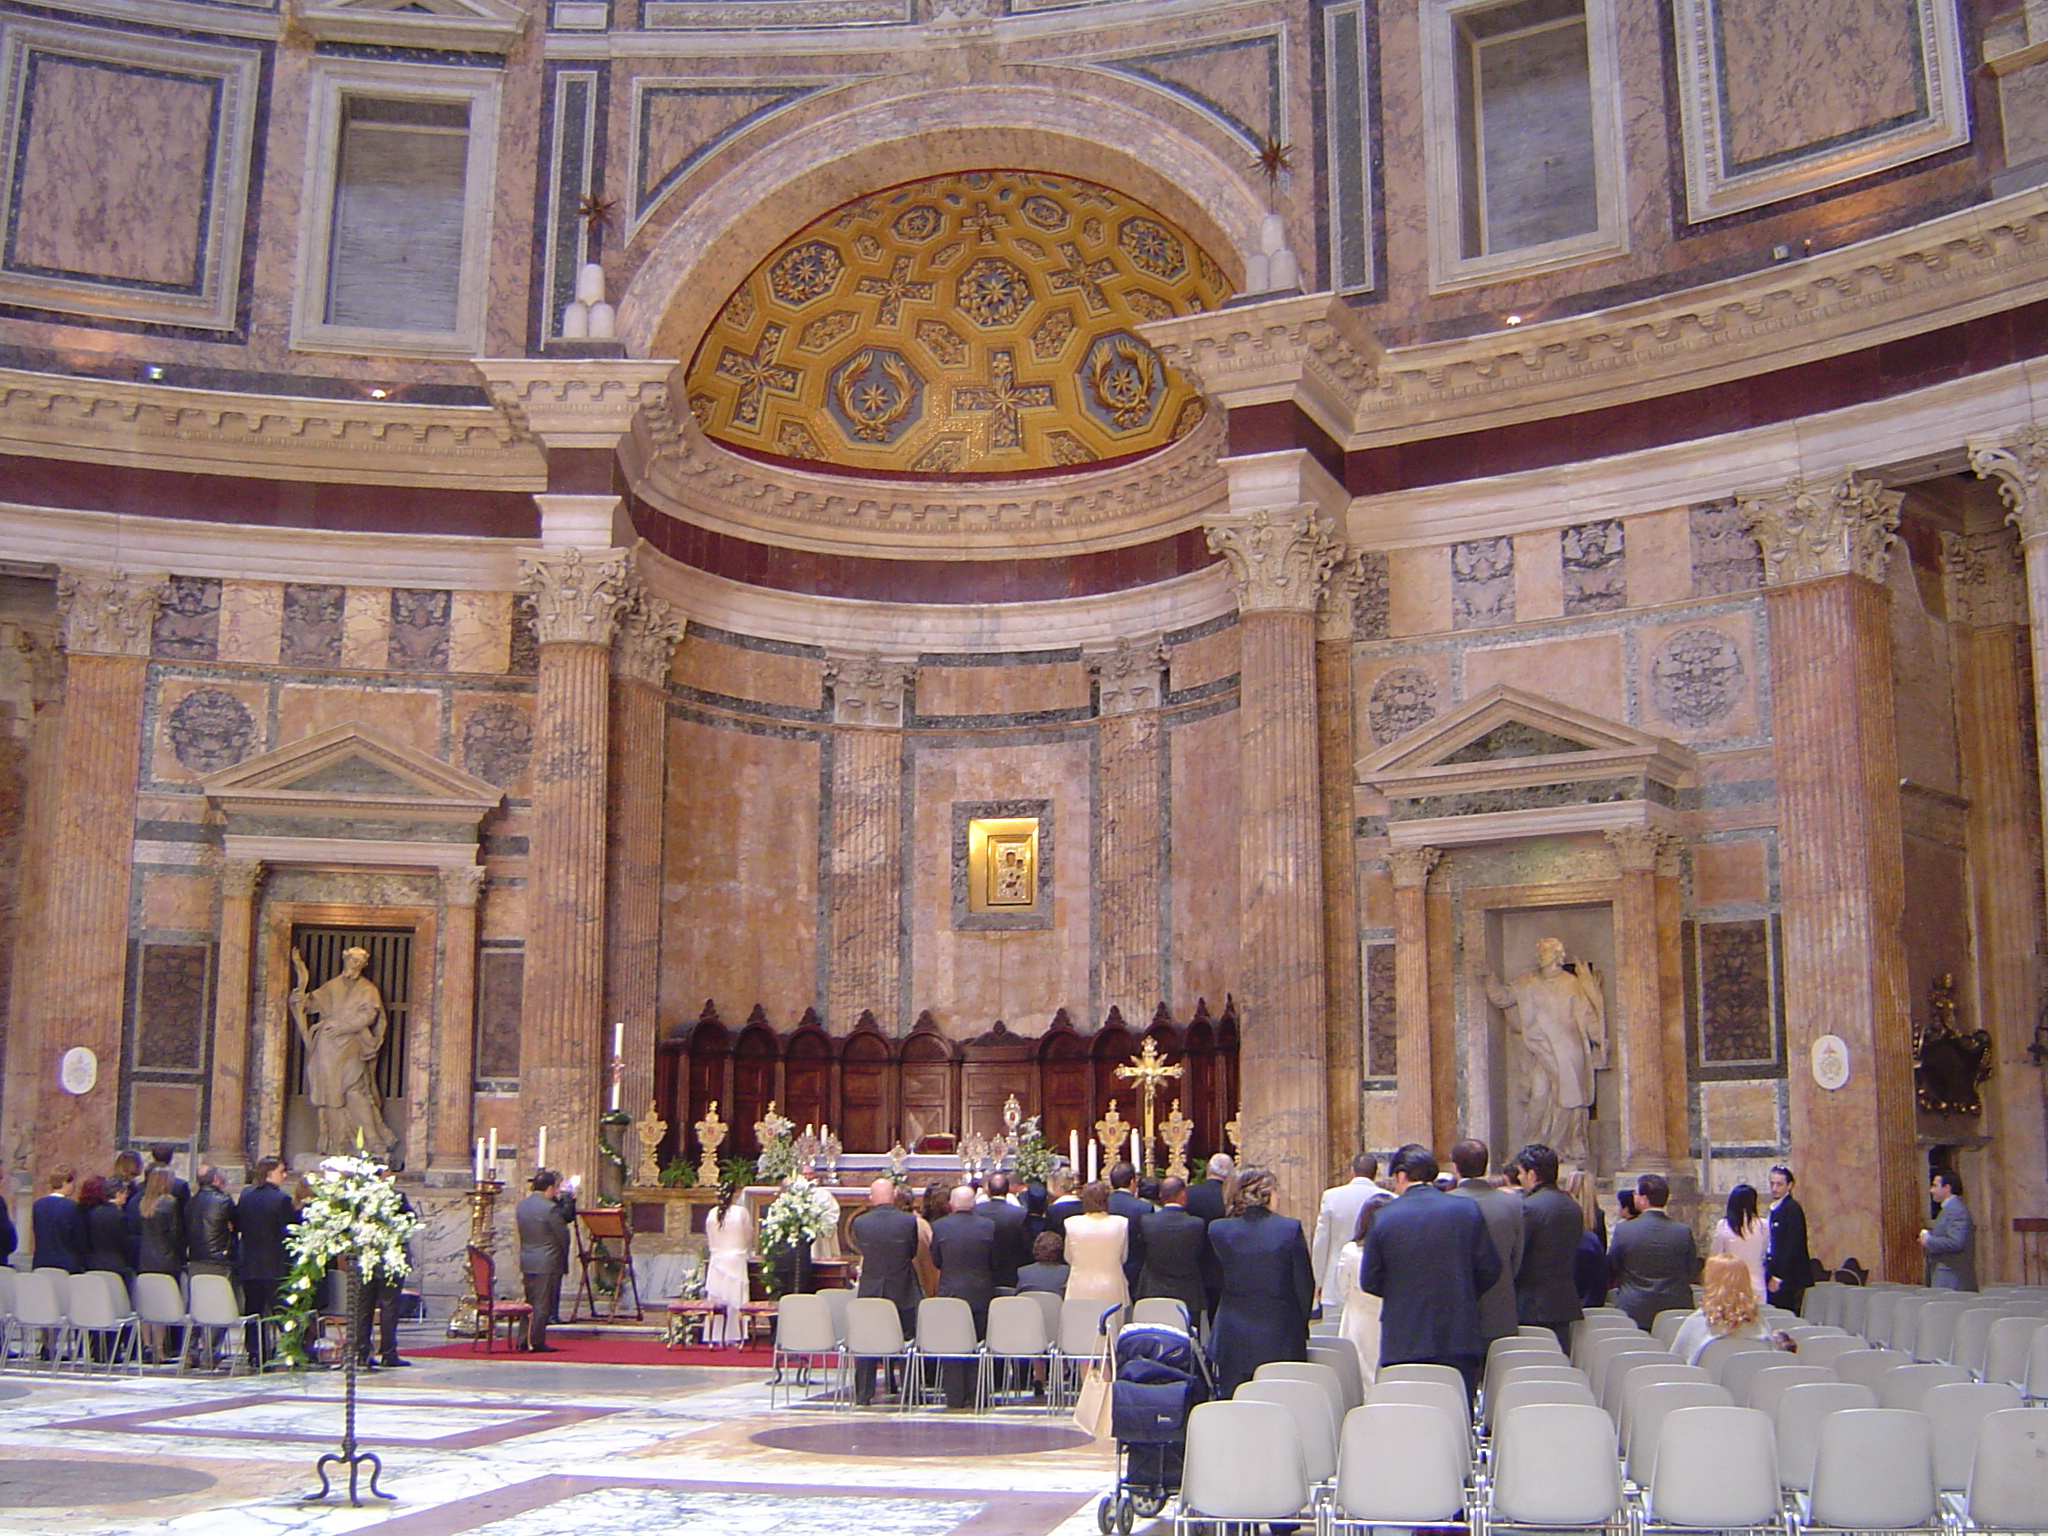 Altar of pantheon